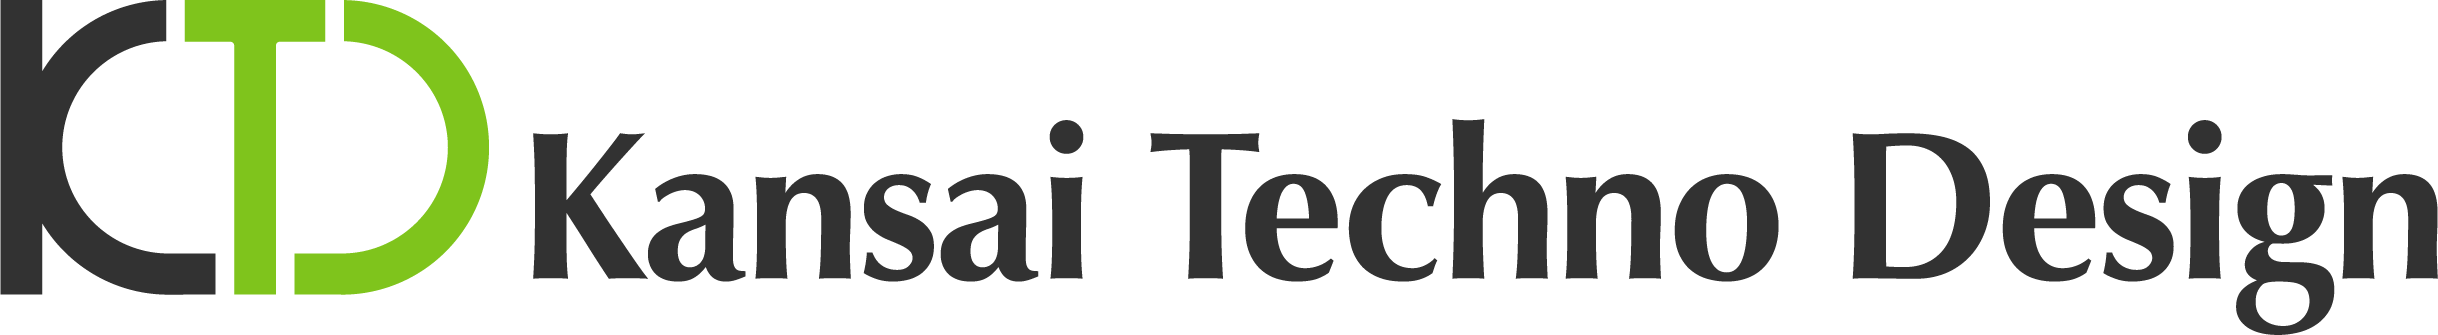 ktd_logo